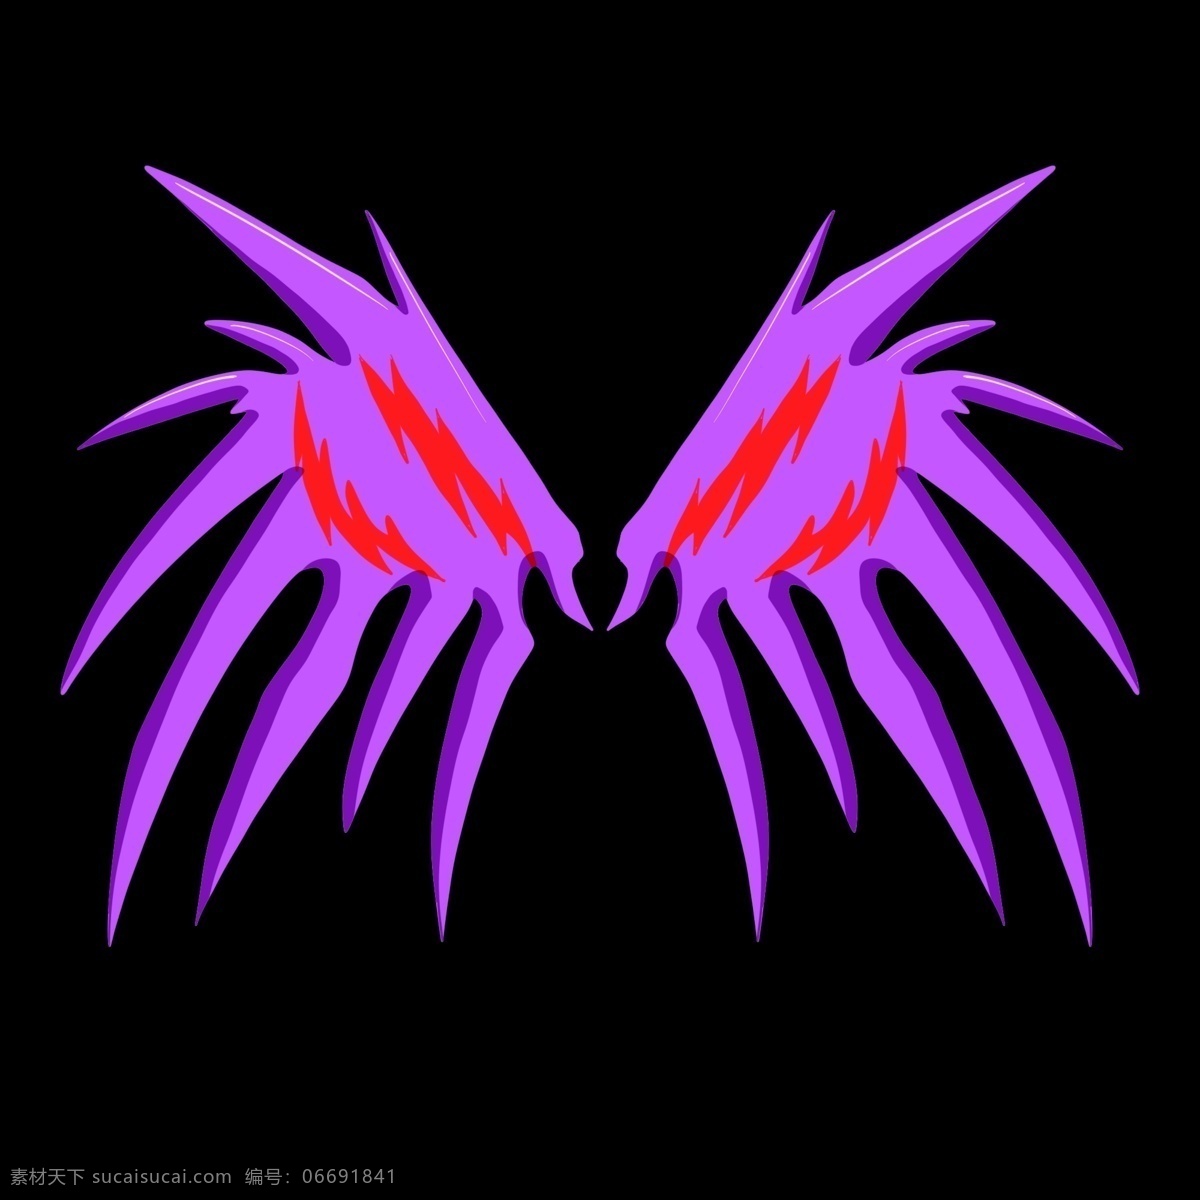 邪恶 翅膀 插画 紫色 恶魔 翼 邪恶的翅膀 卡通插画 羽毛 羽翼 展翅 天使恶魔插画